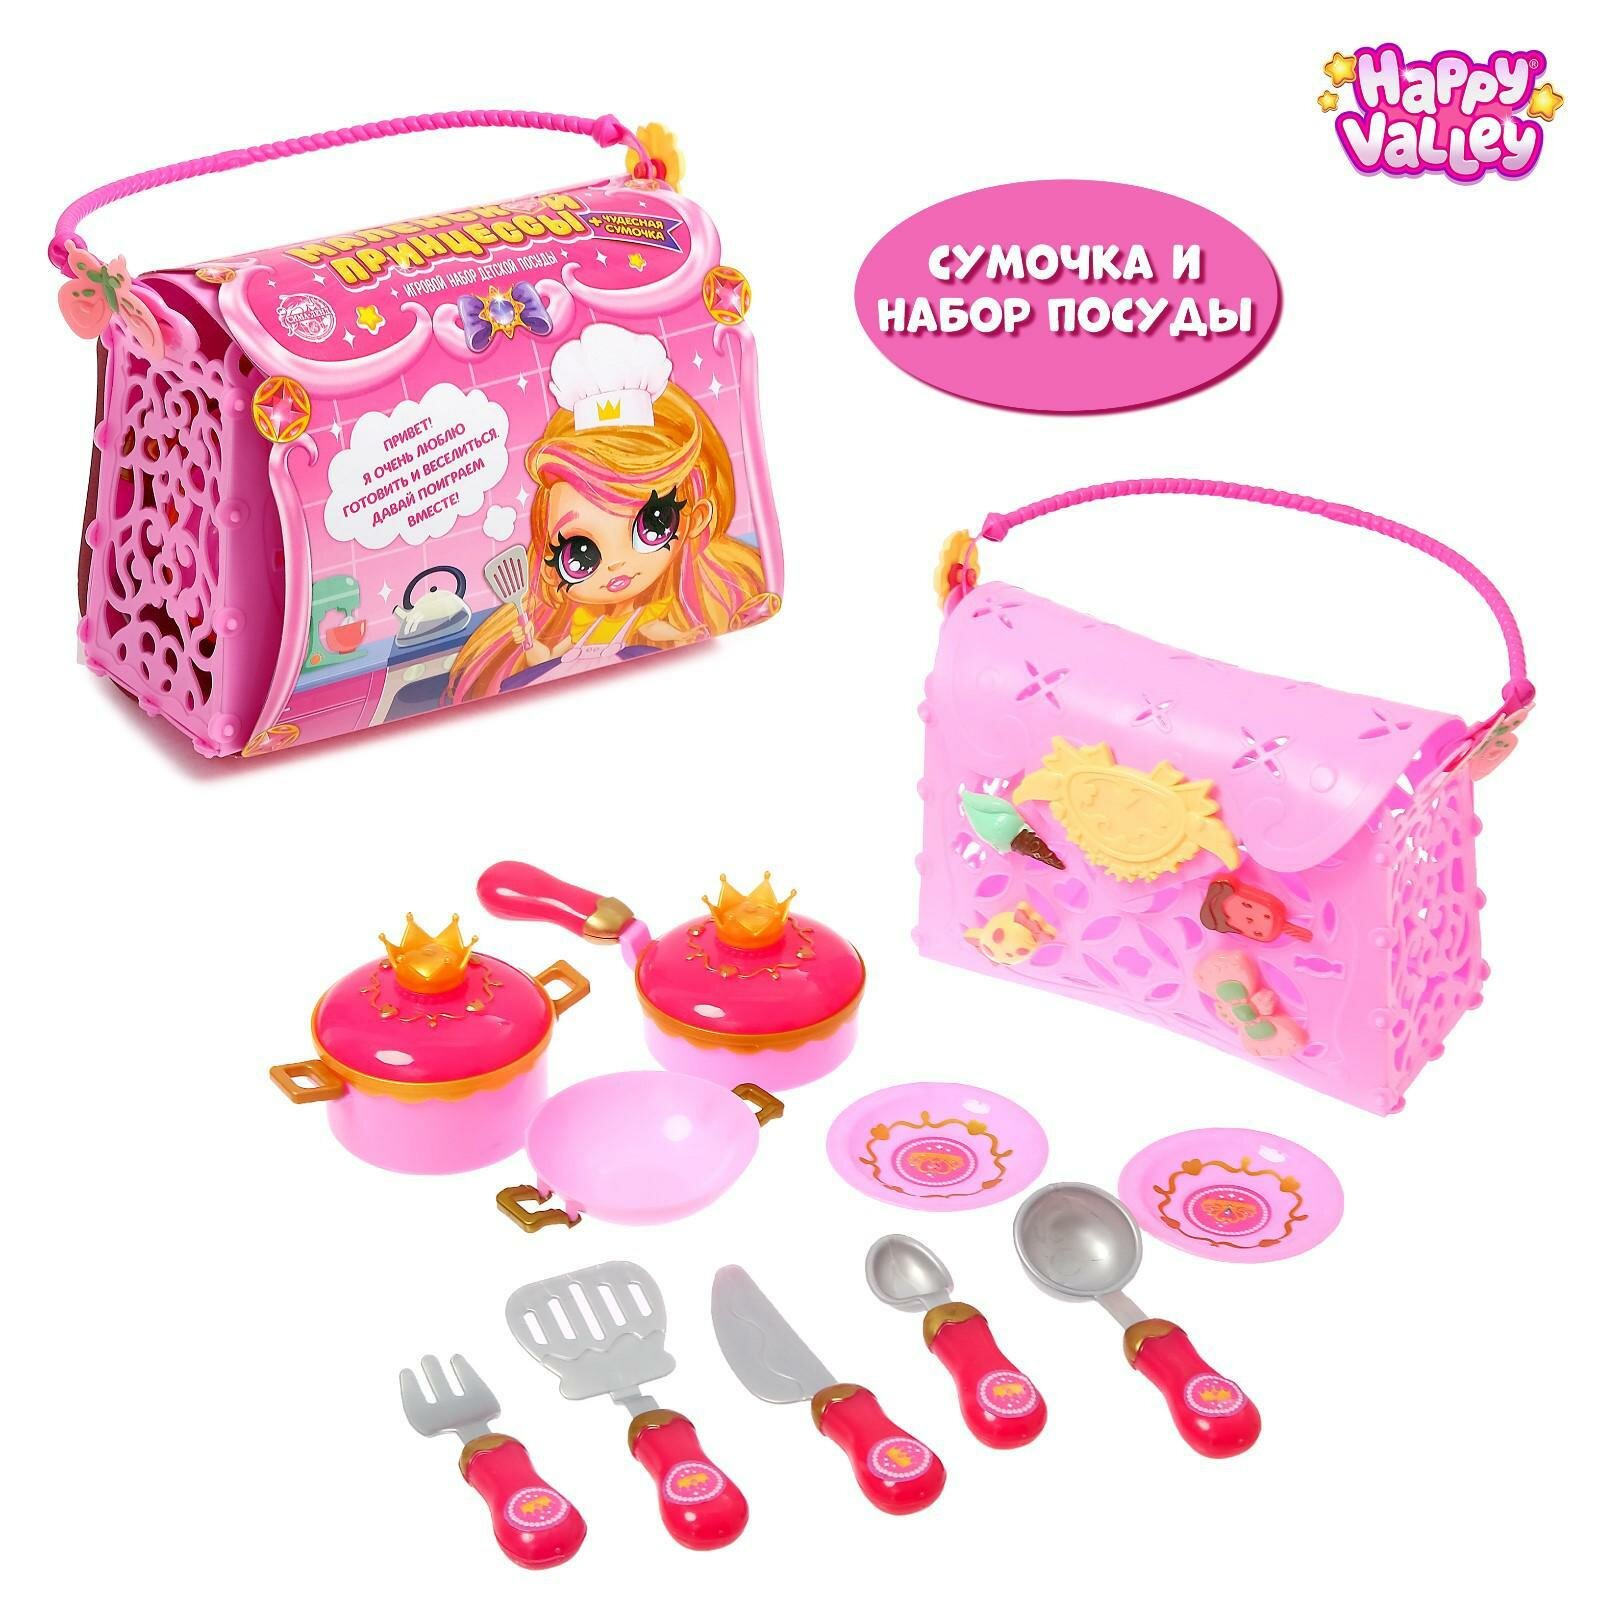 Игровой набор посуды "Для маленькой принцессы", в сумочке